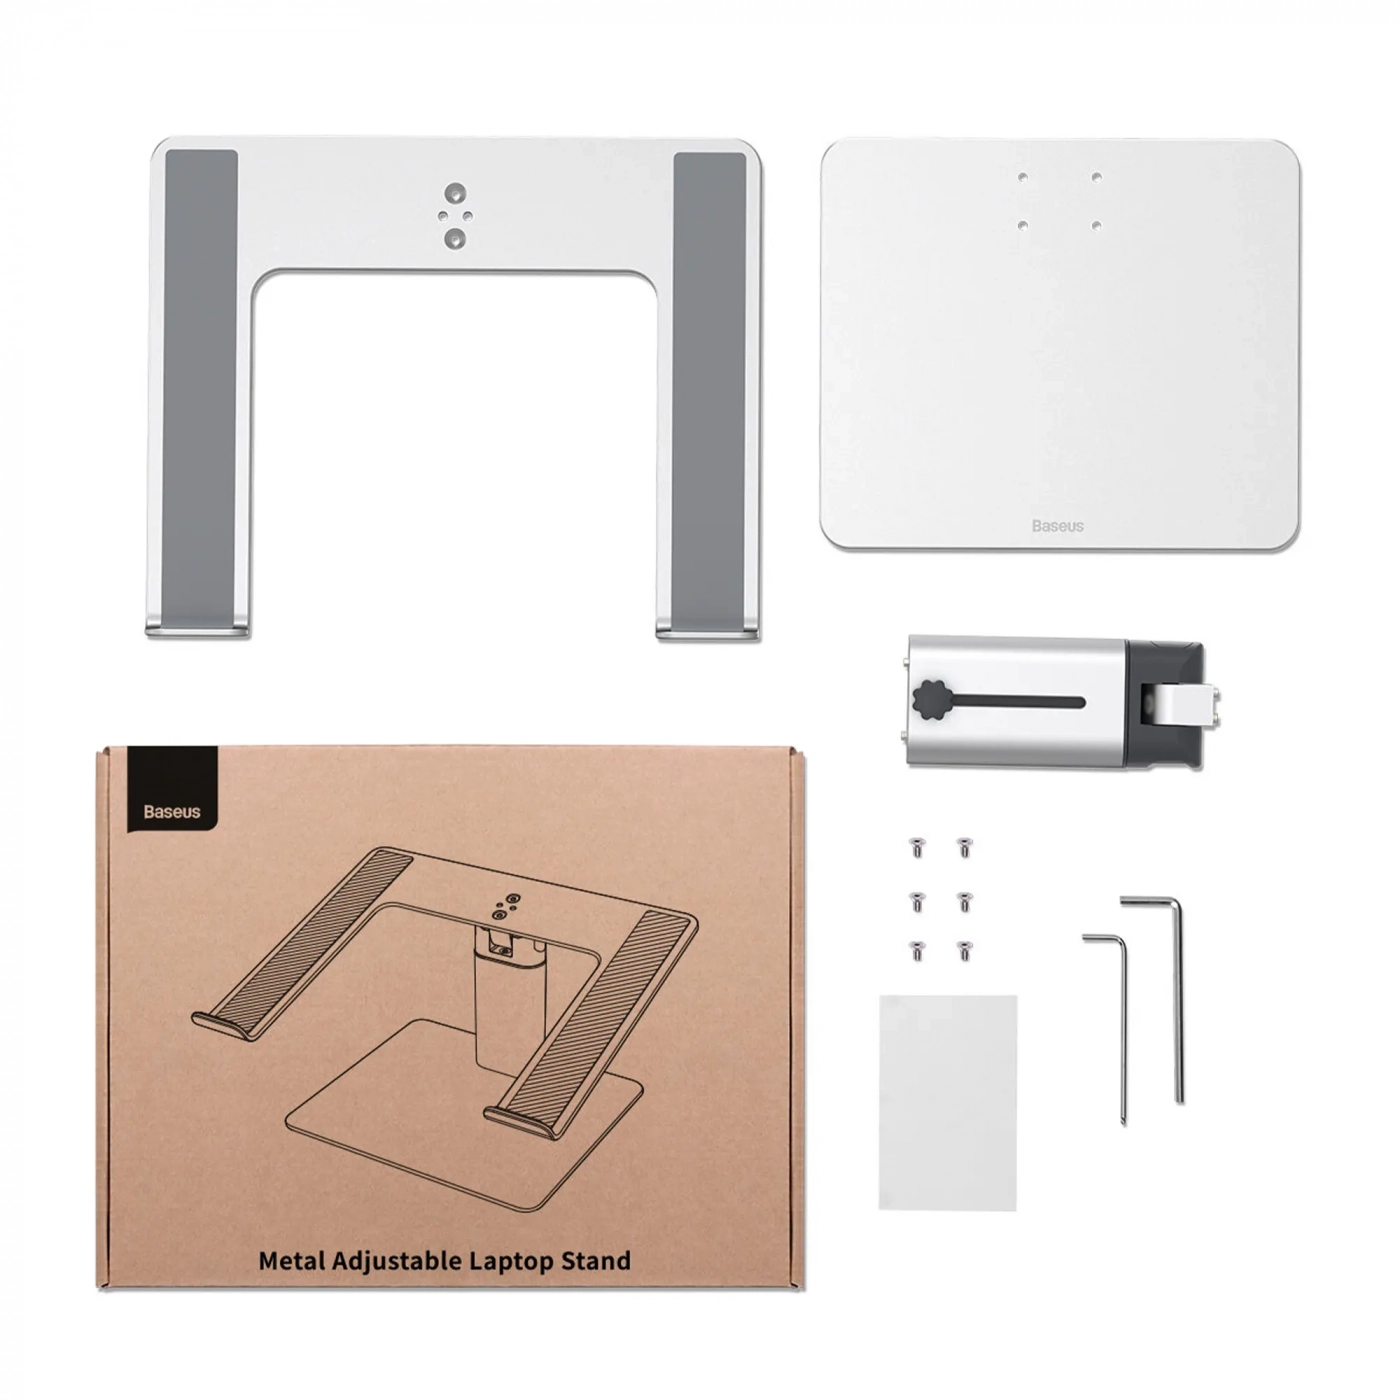 Купить Подставка для ноутбука Baseus Metal Adjustable Laptop Stand Silver - фото 11